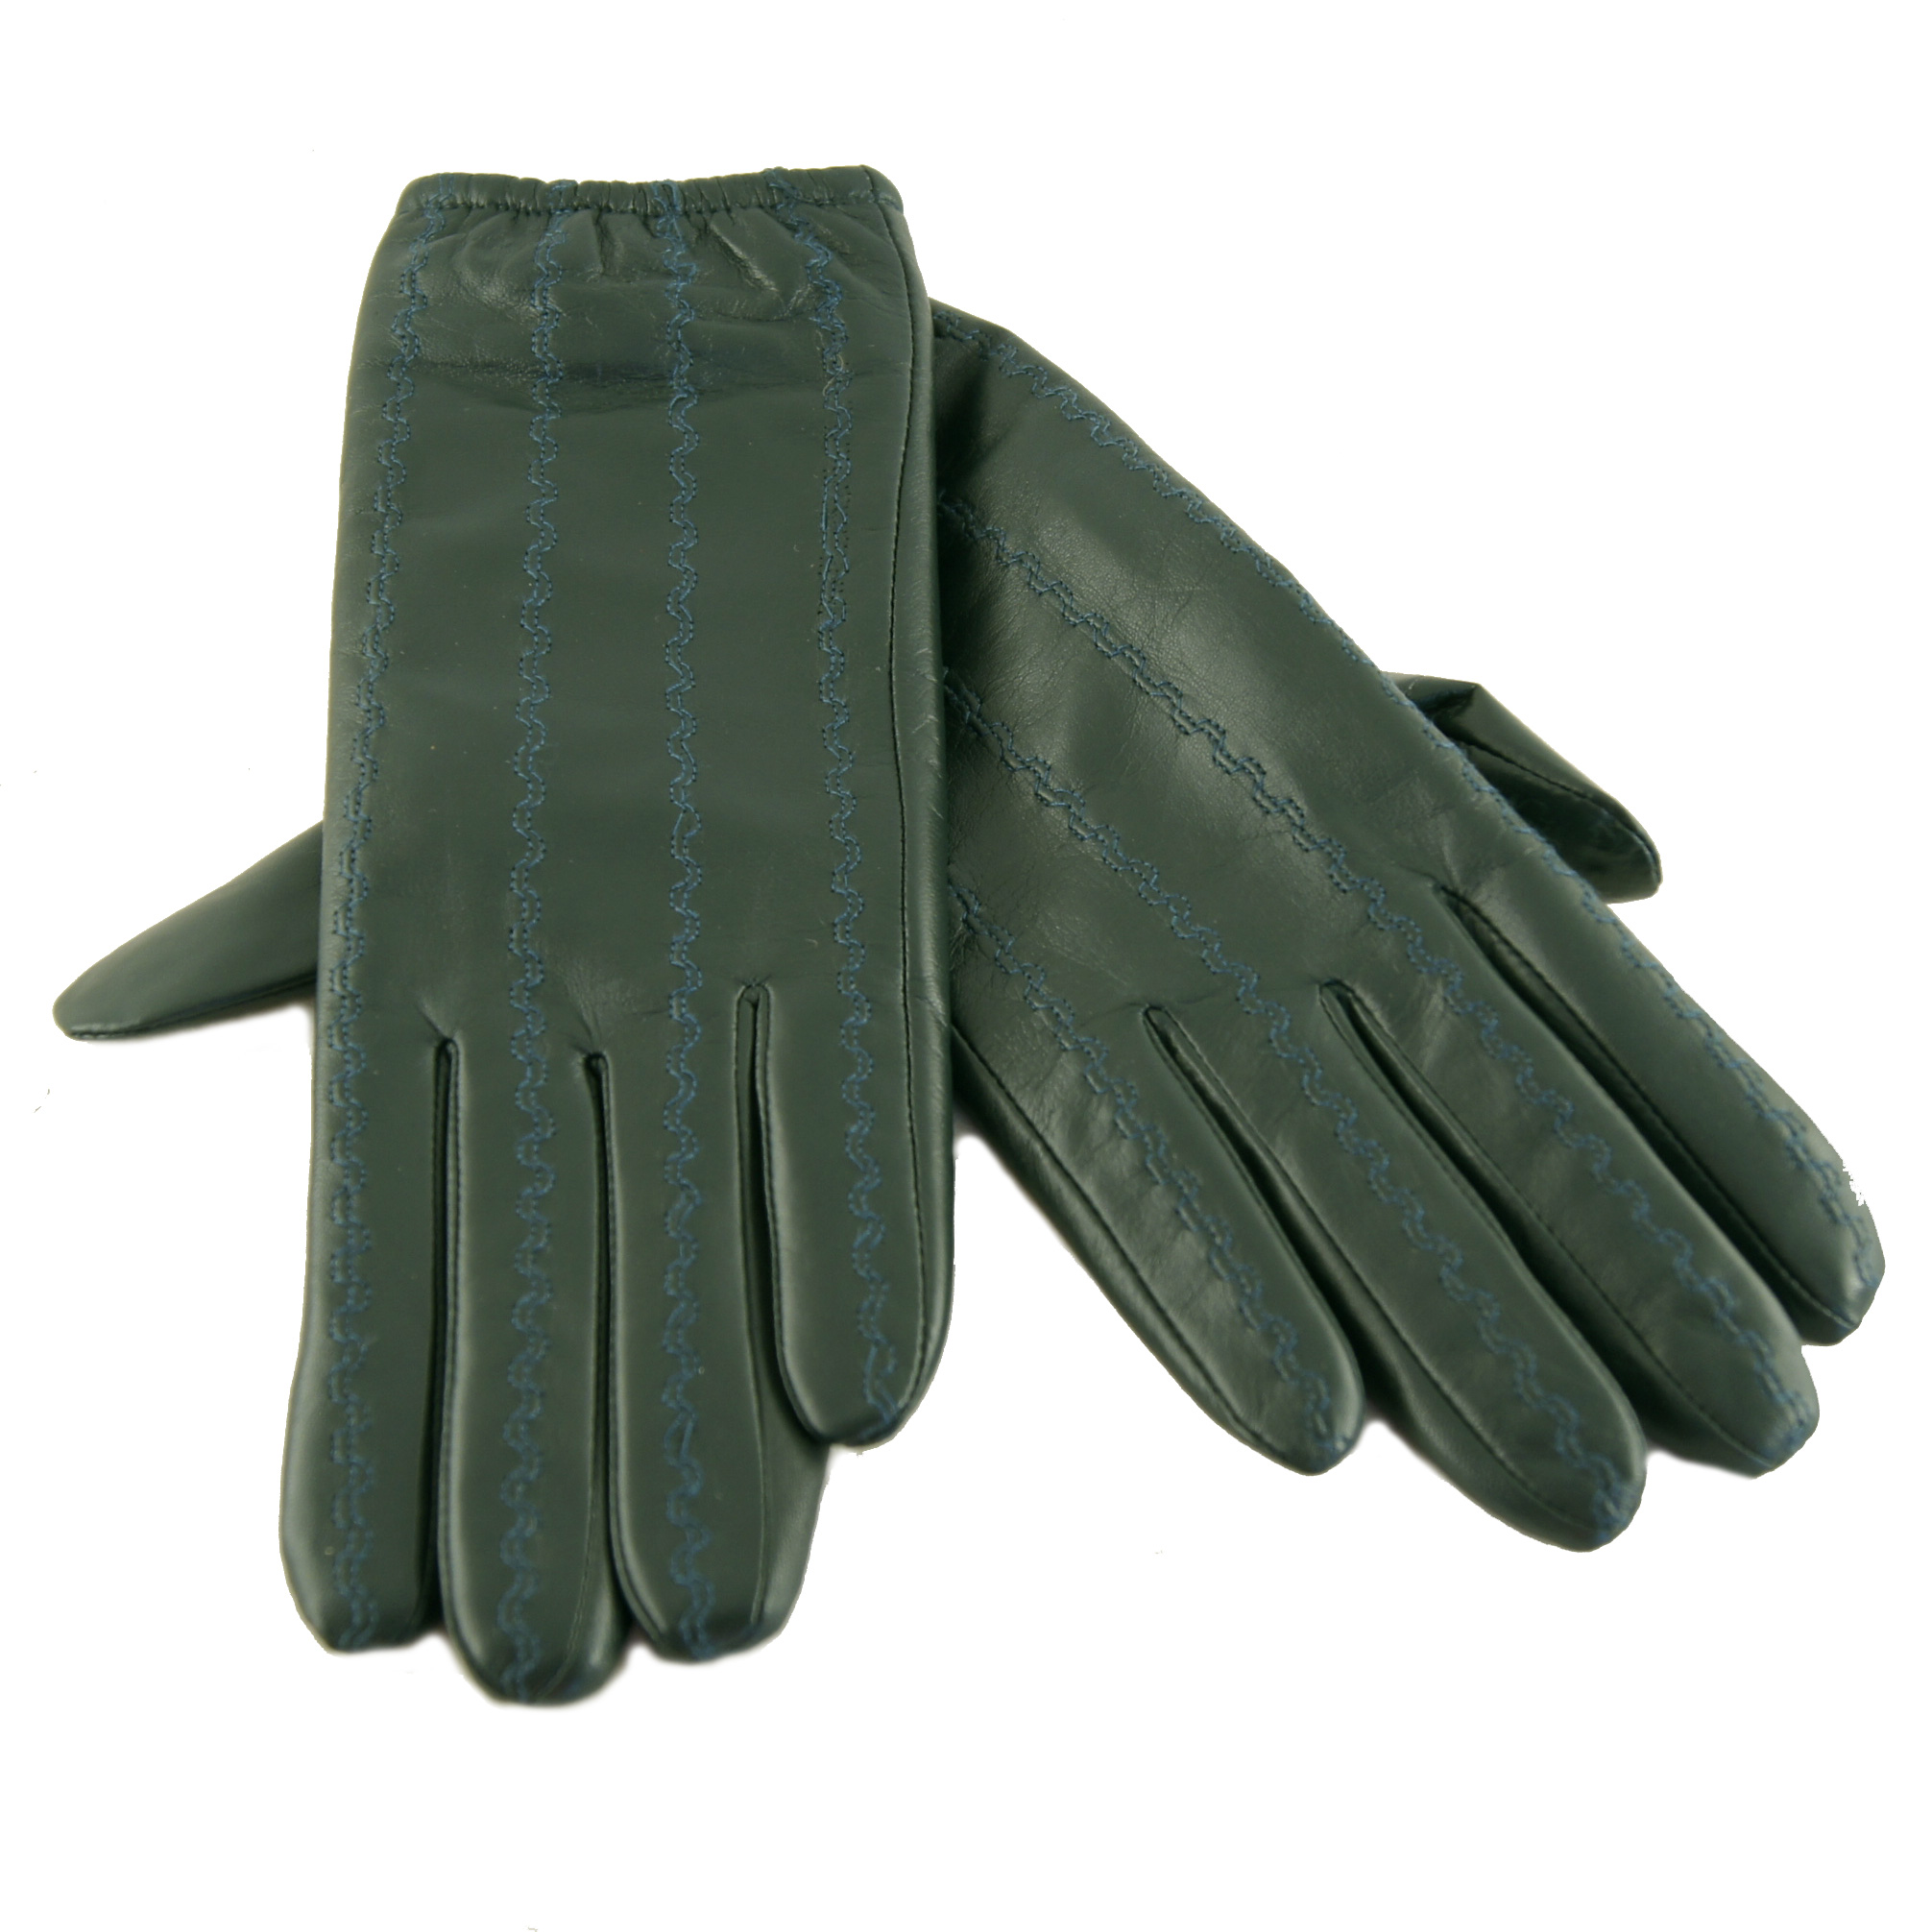 Skind handsker grøn læder - Onstage handsker i